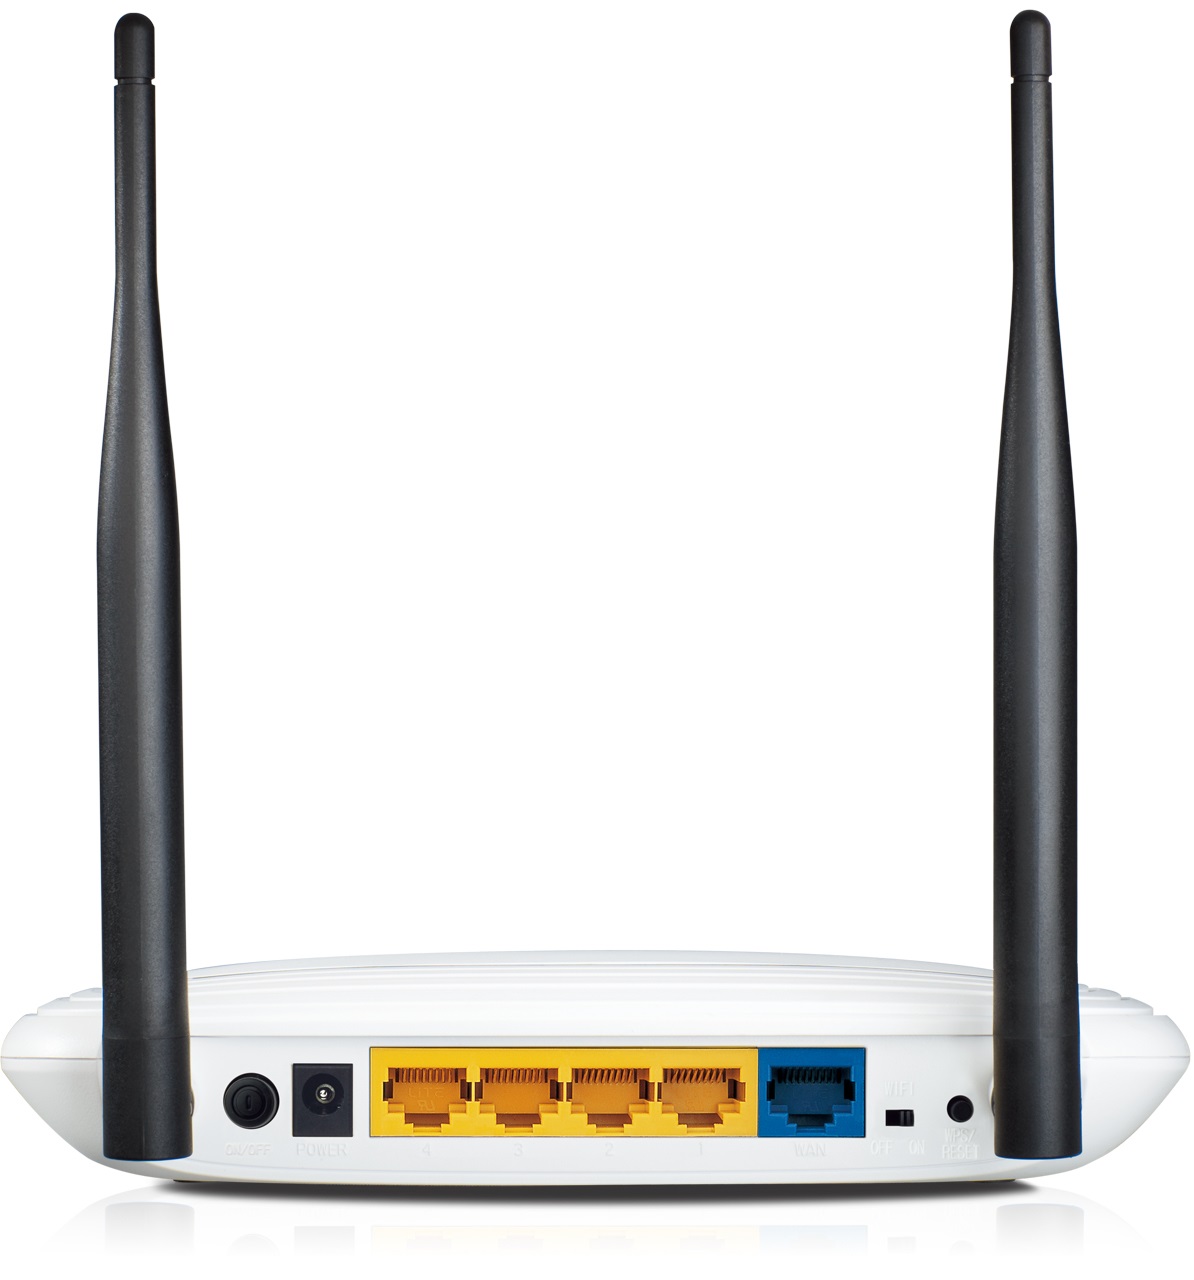 TP-Link TL-WR841N WLAN Router 300Mbps 802.11 b/g/n 4x LAN 10/100Mbps